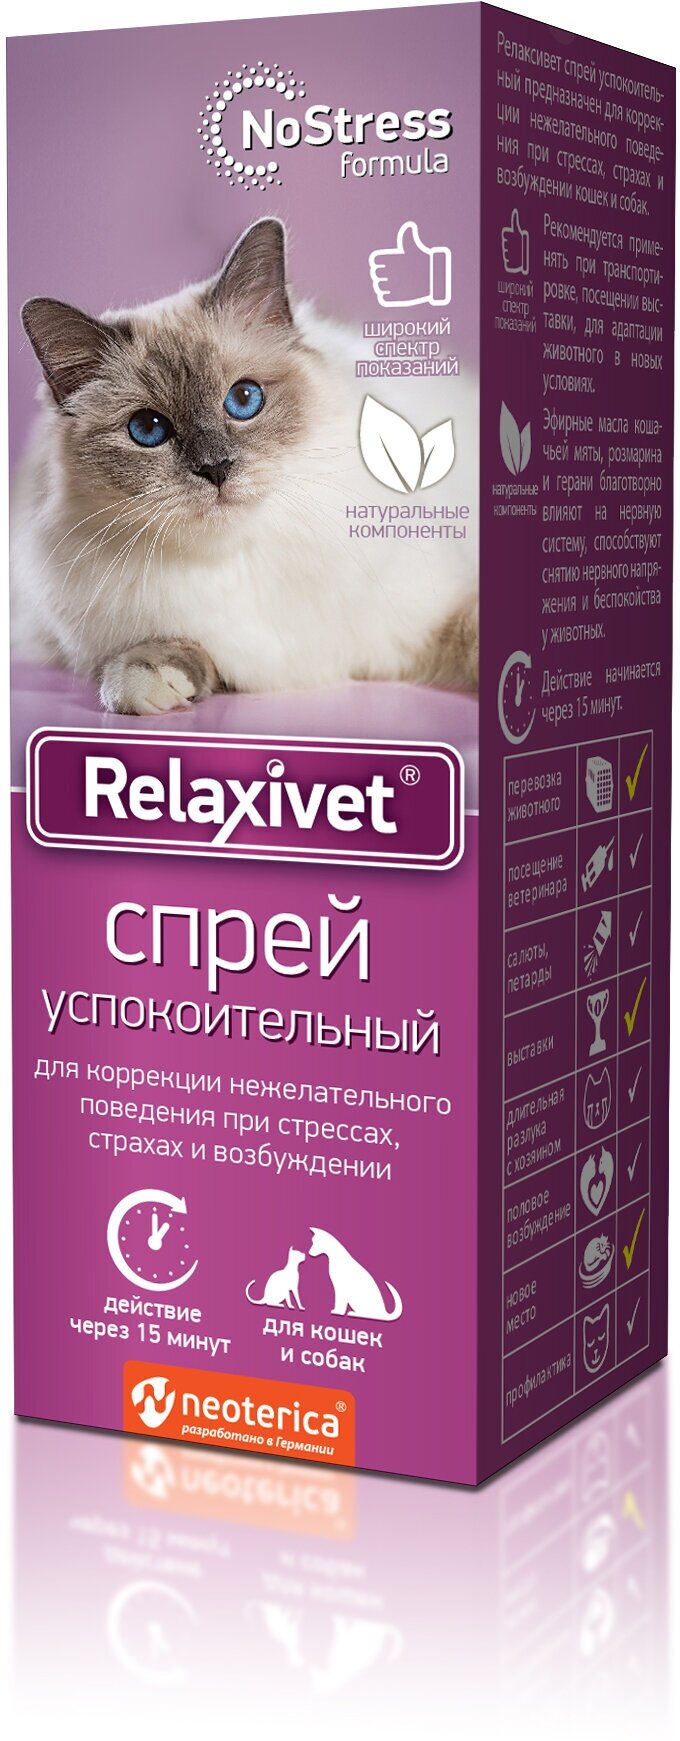 Спрей Relaxivet для кошек Успокоительный, 50мл - фото №10